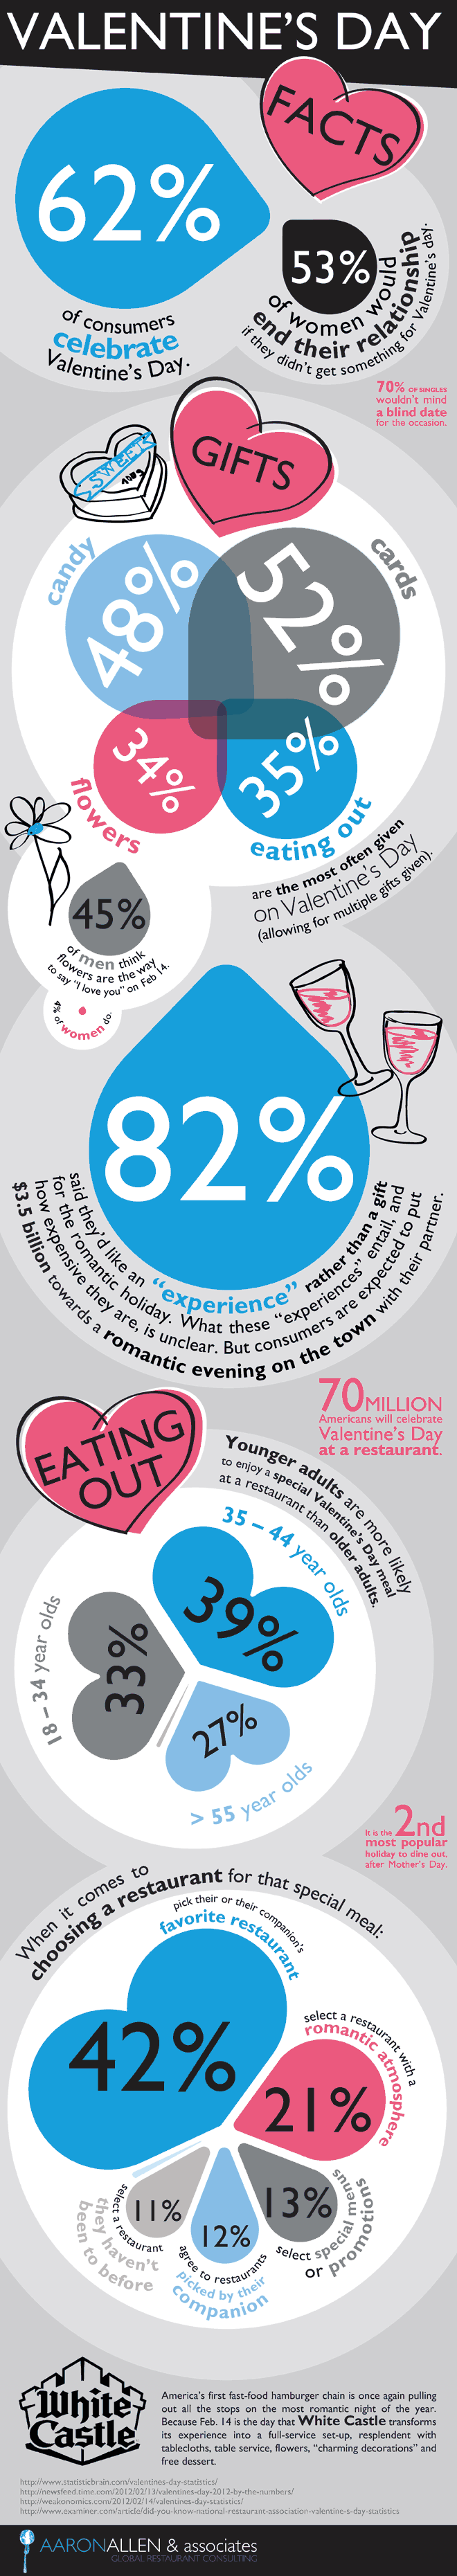 Valentine's Day Restaurant Marketing Infographic